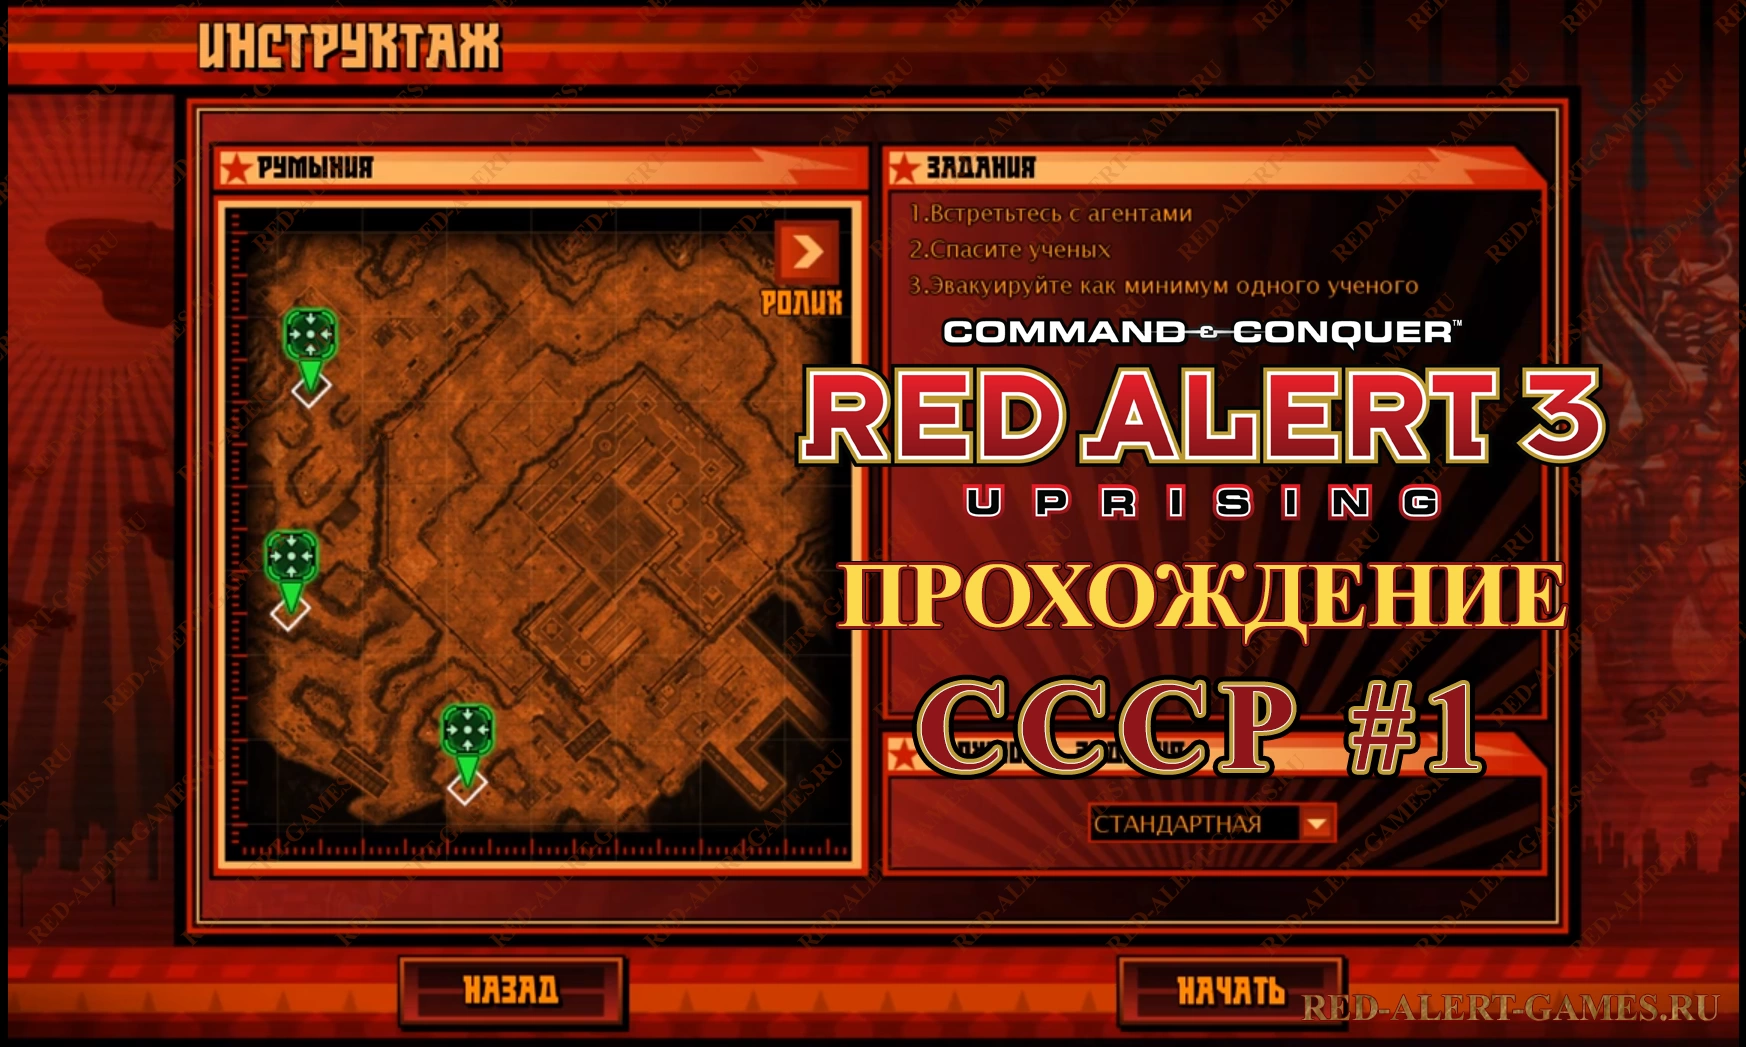 Red Alert 3 Uprising Прохождение СССР - Первая миссия (вводная)